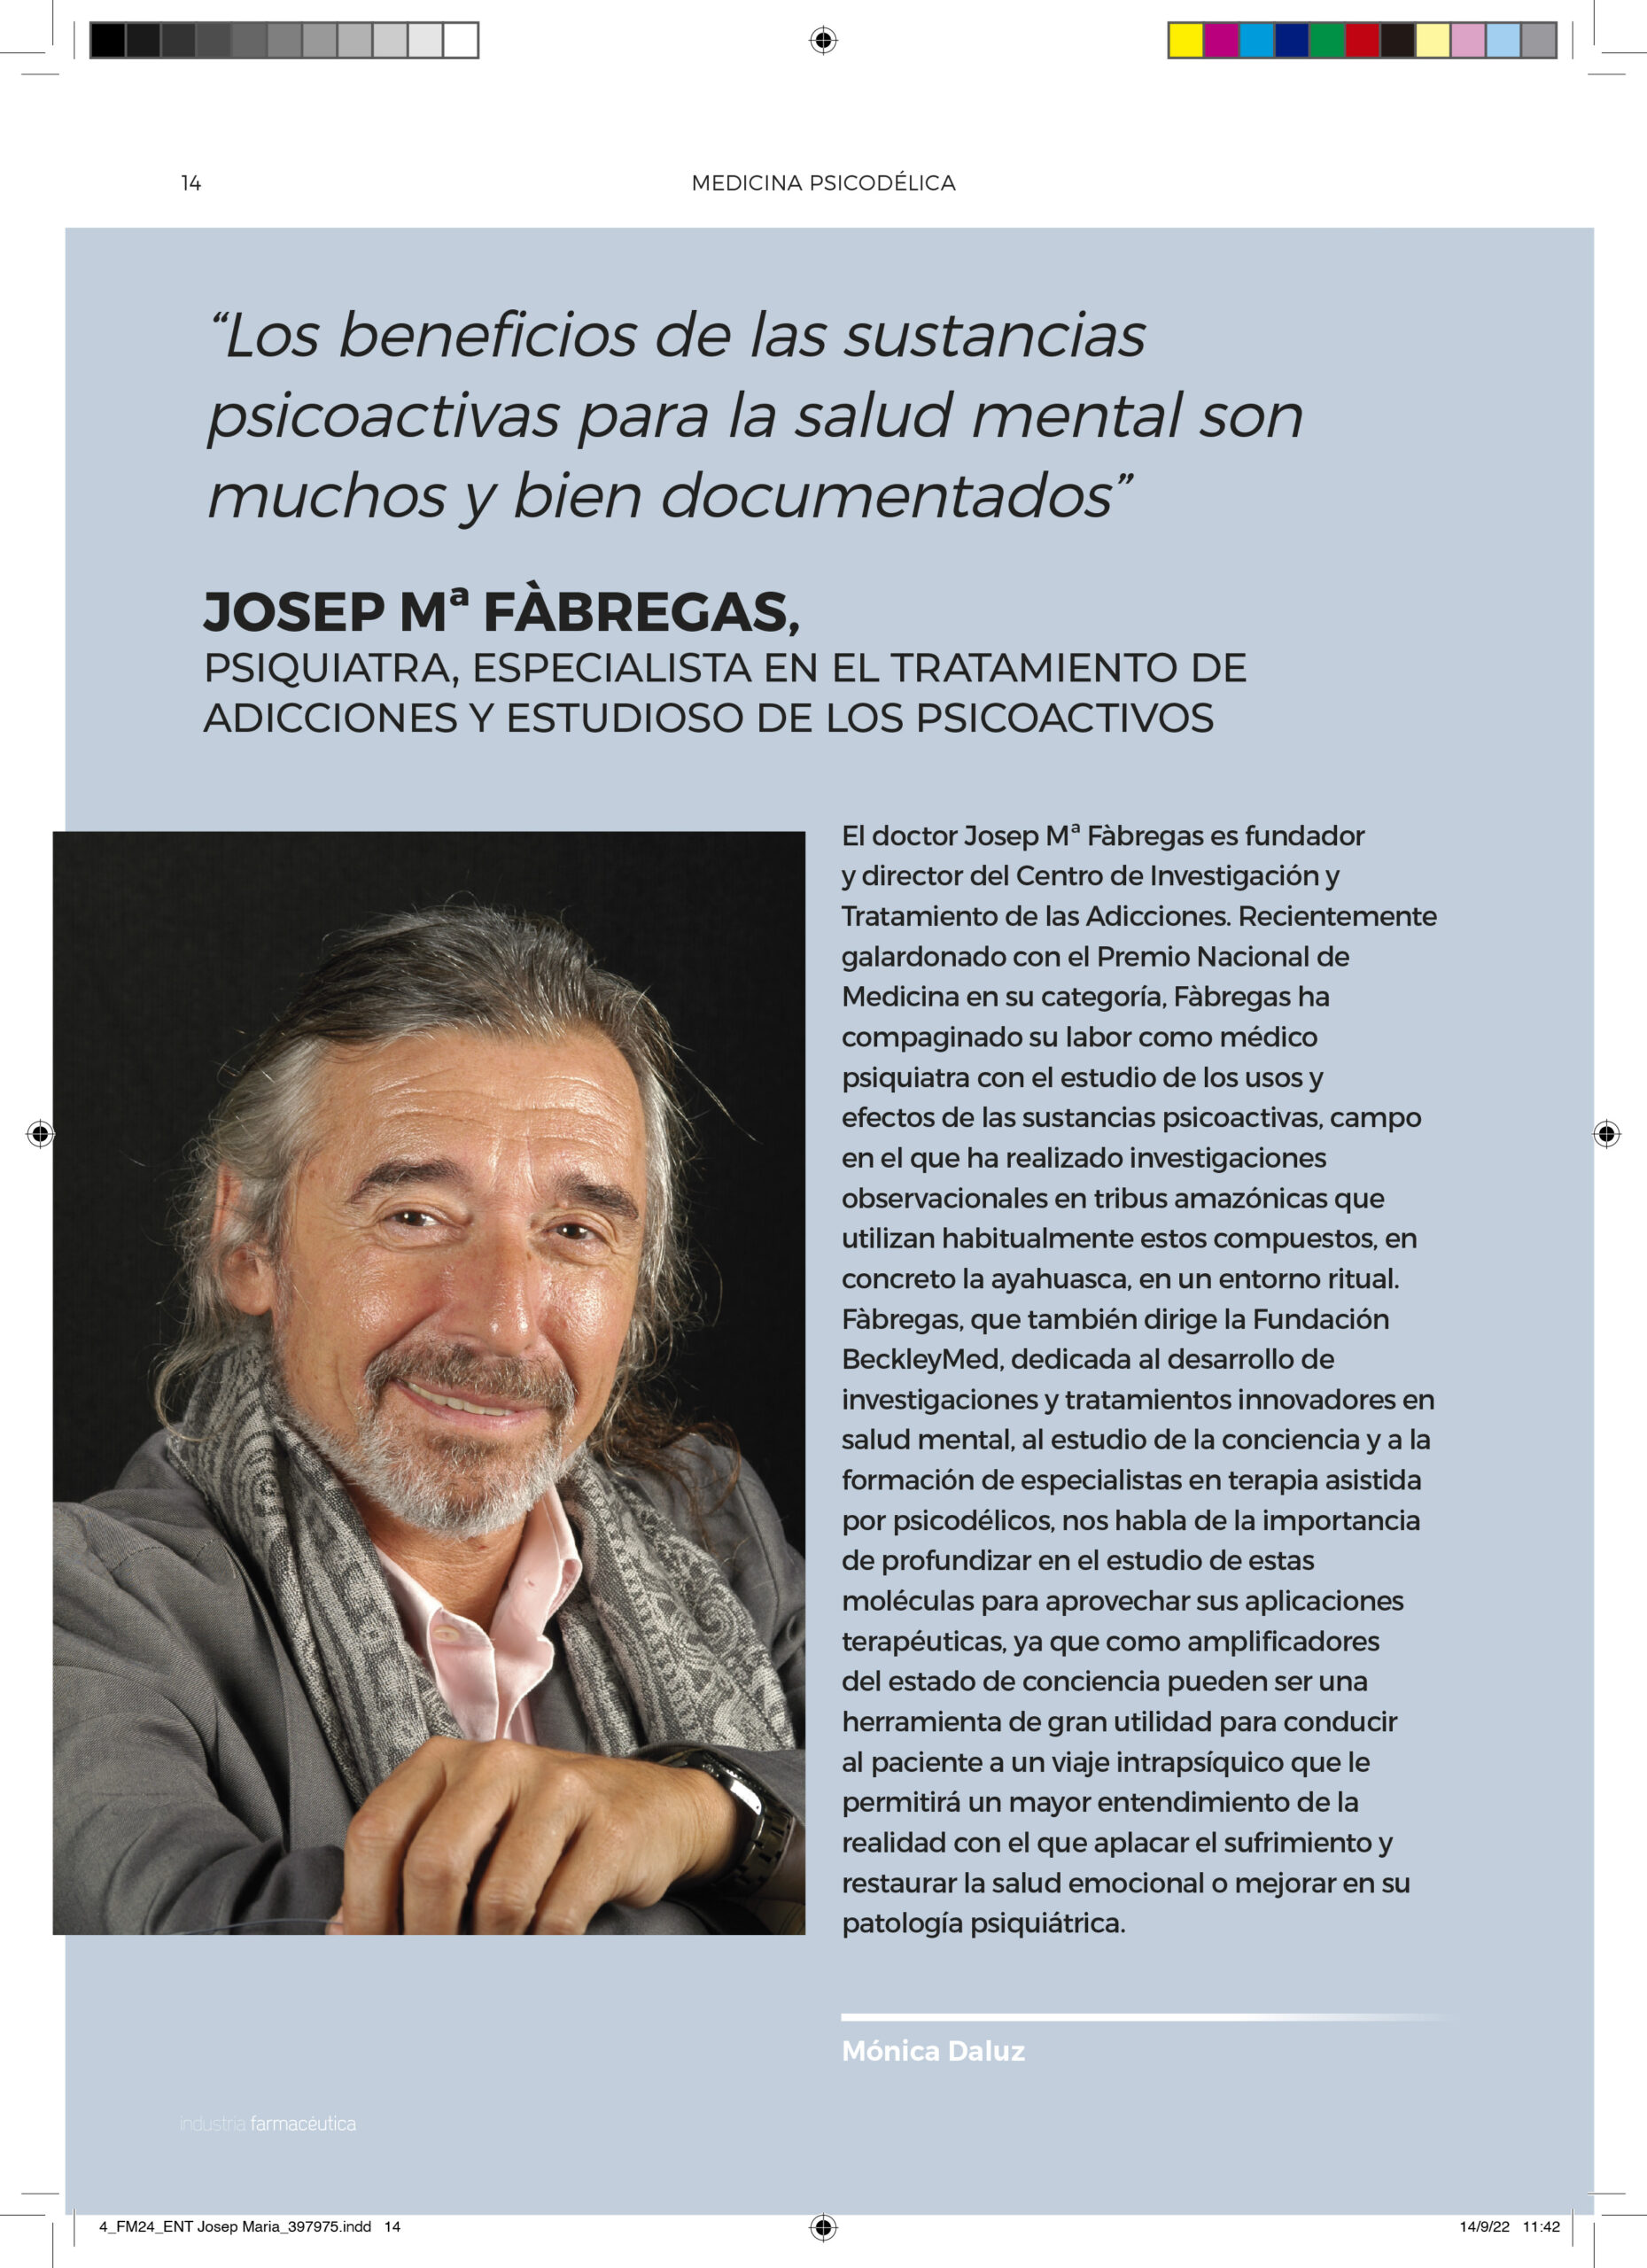 Entrevista a Josep Mª Fàbregas, psiquiatra, especialista en el tratamiento de adicciones y estudioso de los psicoactivos